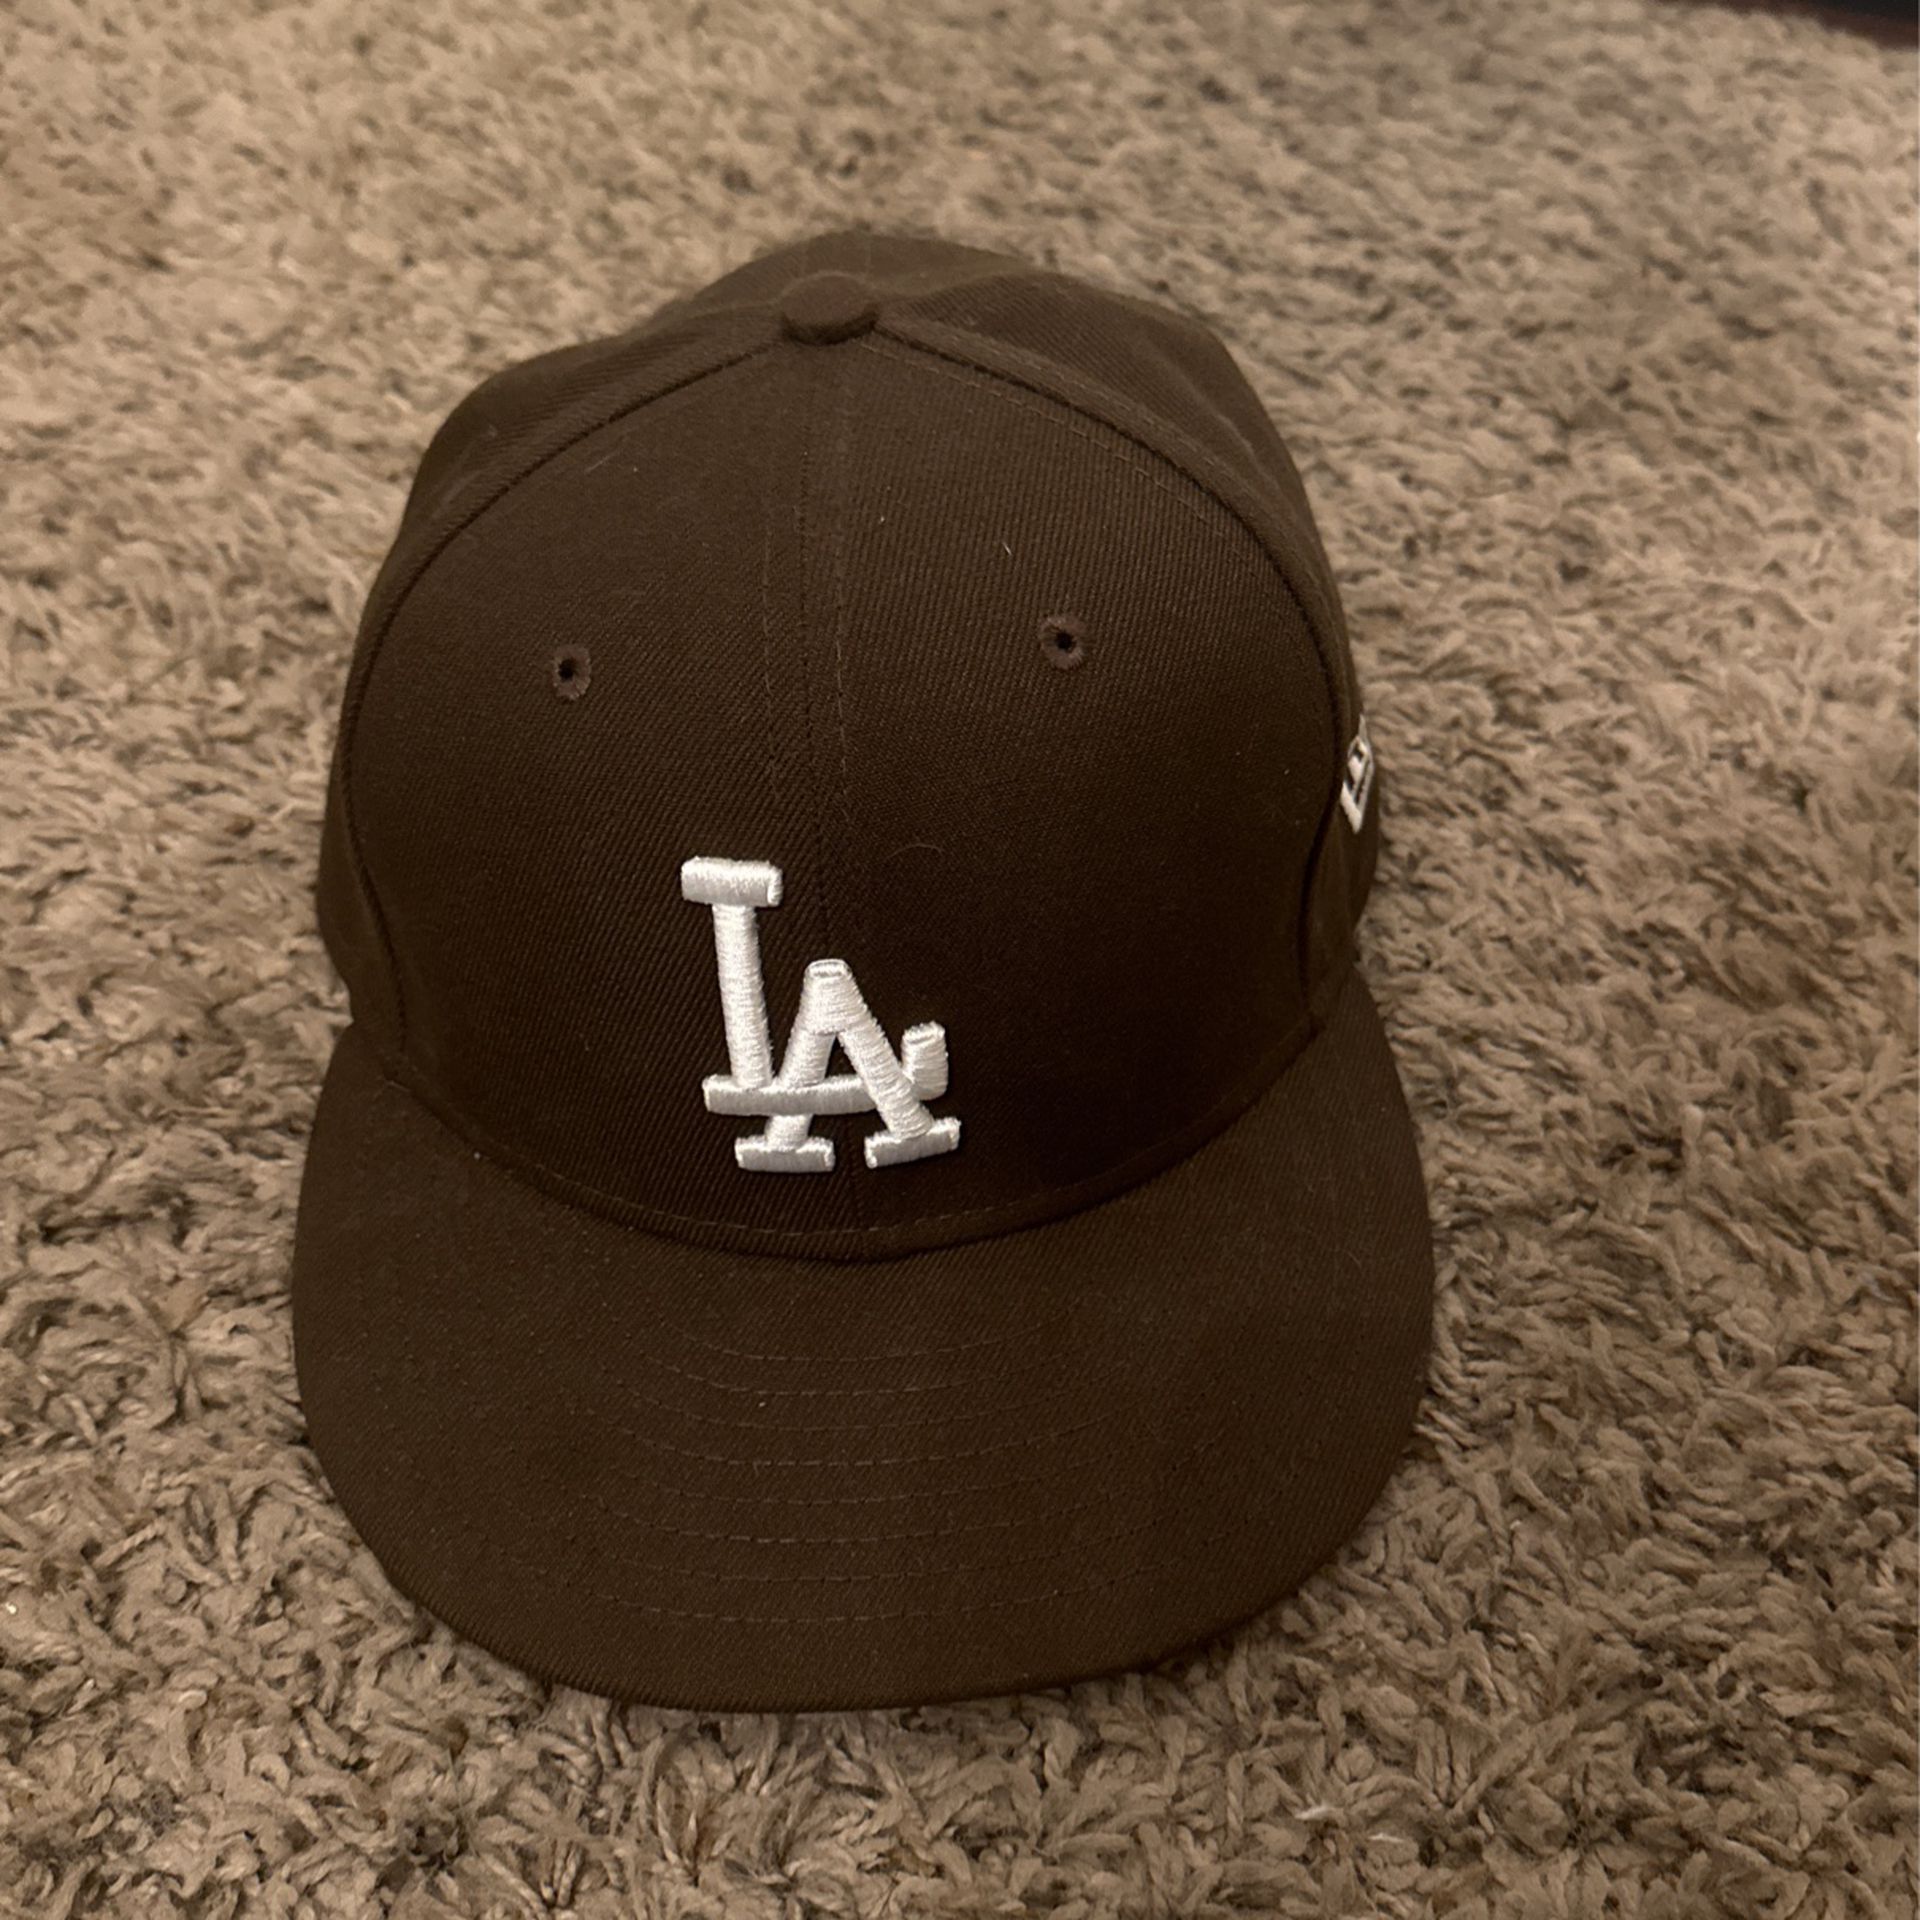 Brown LA hat